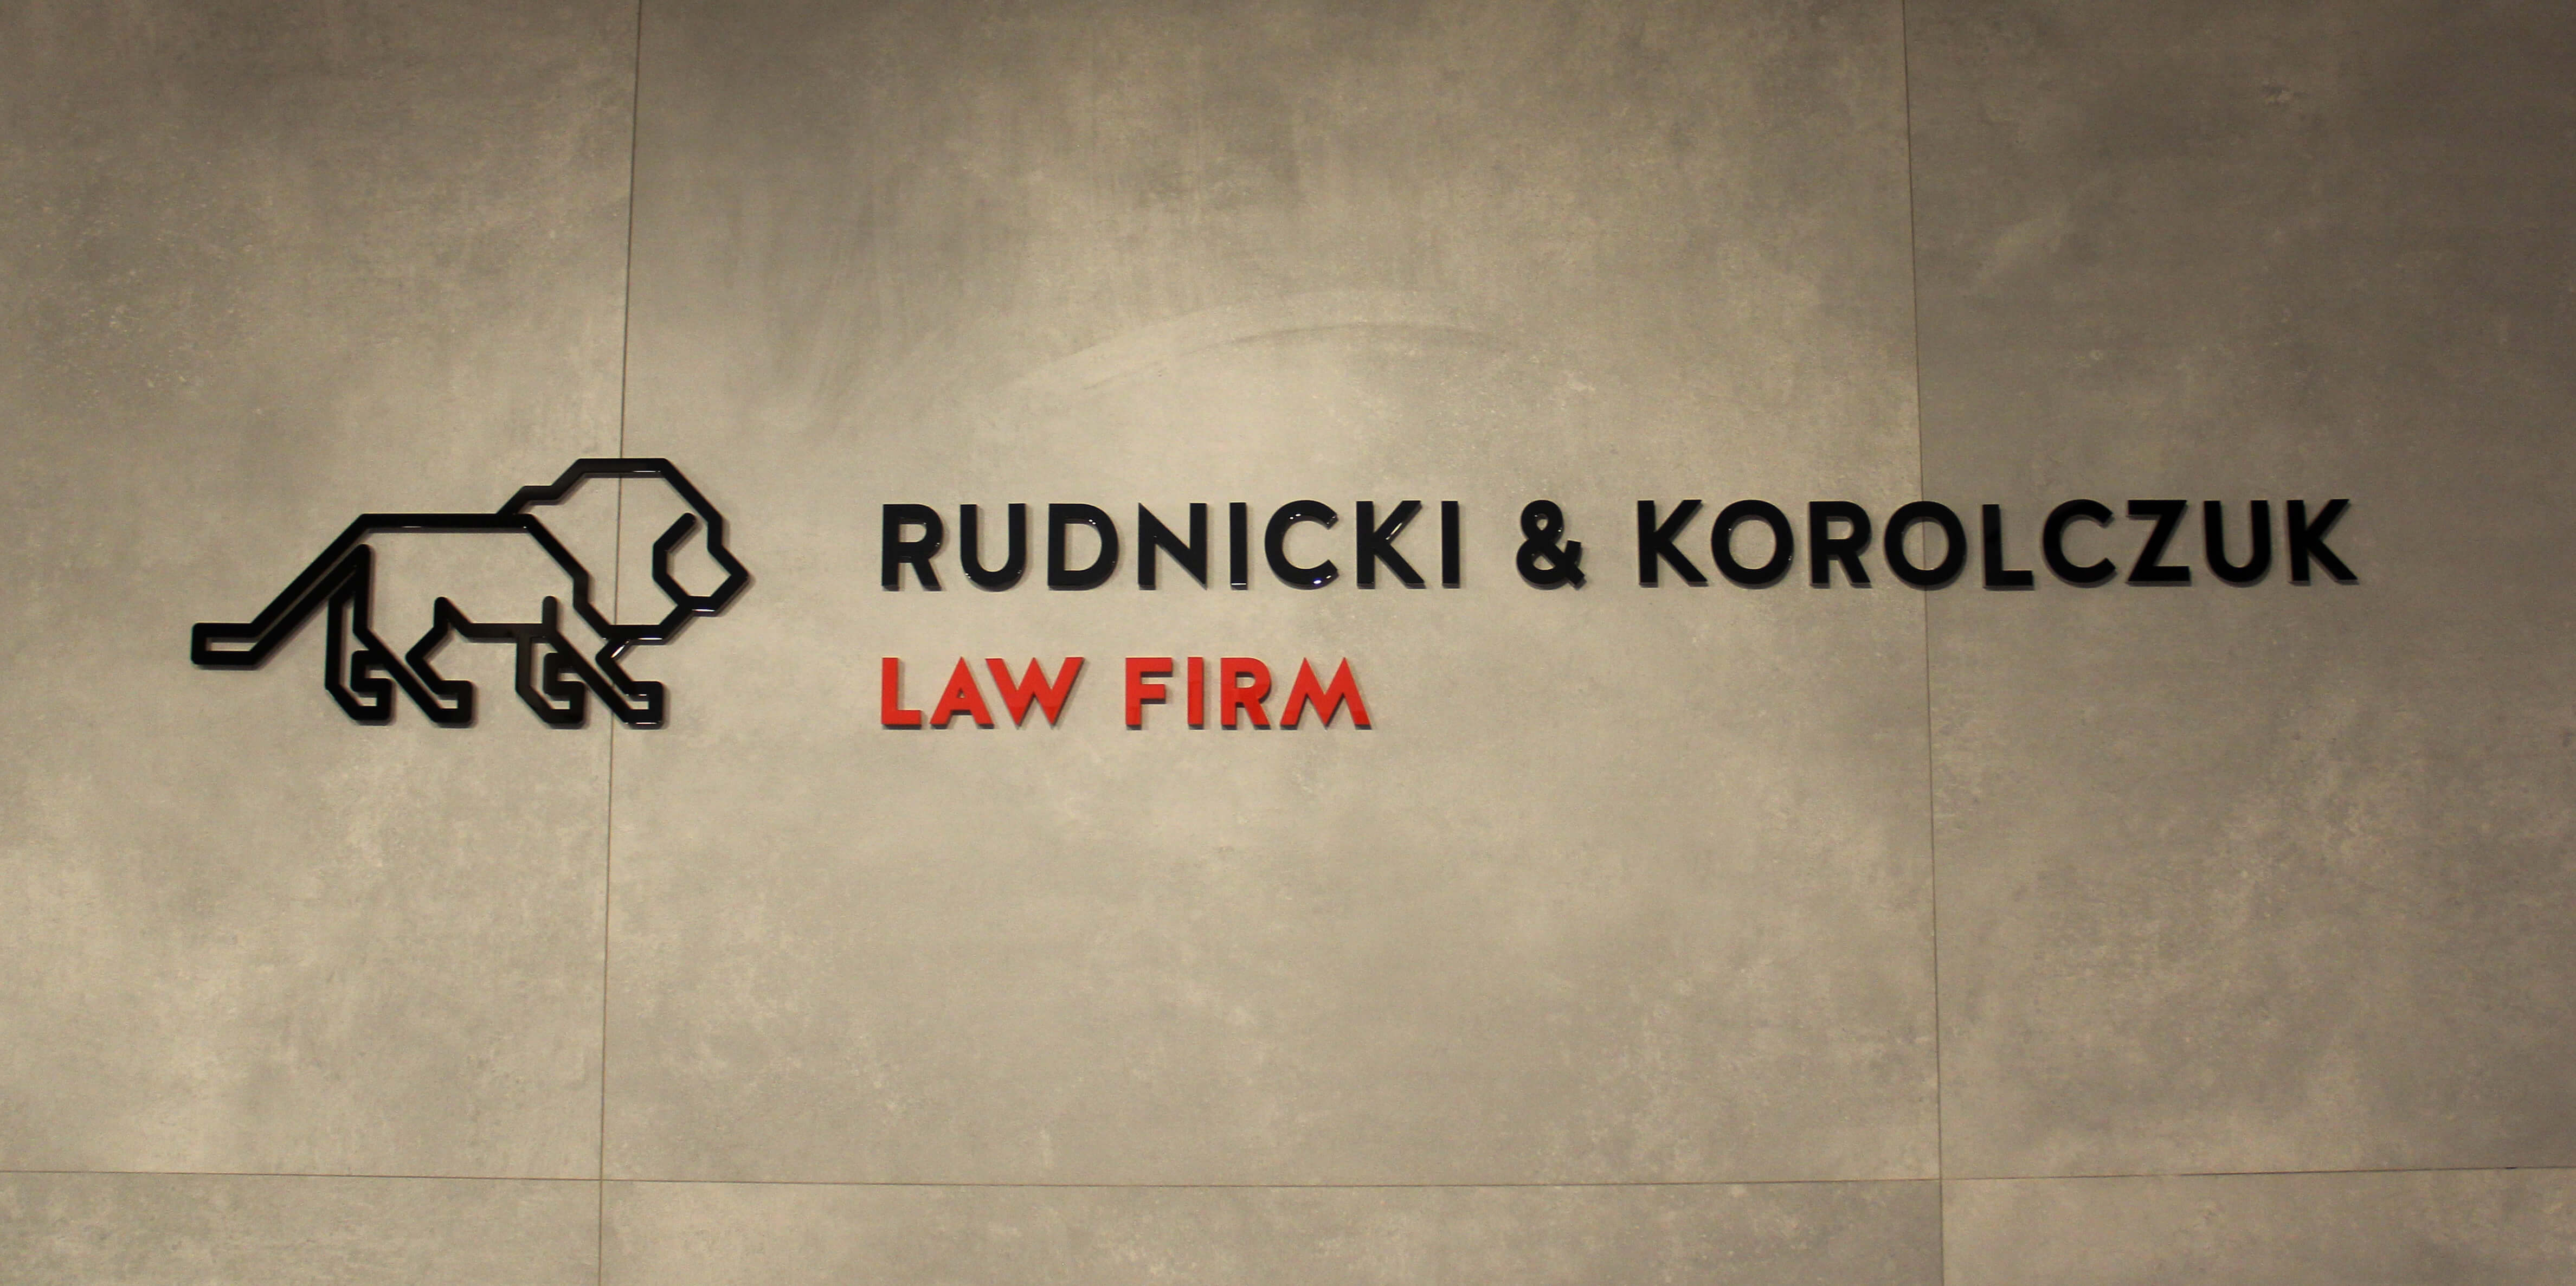 Rudnicki & Korolczuk - Rudnicki i Korolczuk - Logo und 3D-Buchstaben aus Plexiglas an der Wand im Inneren des Gebäudes